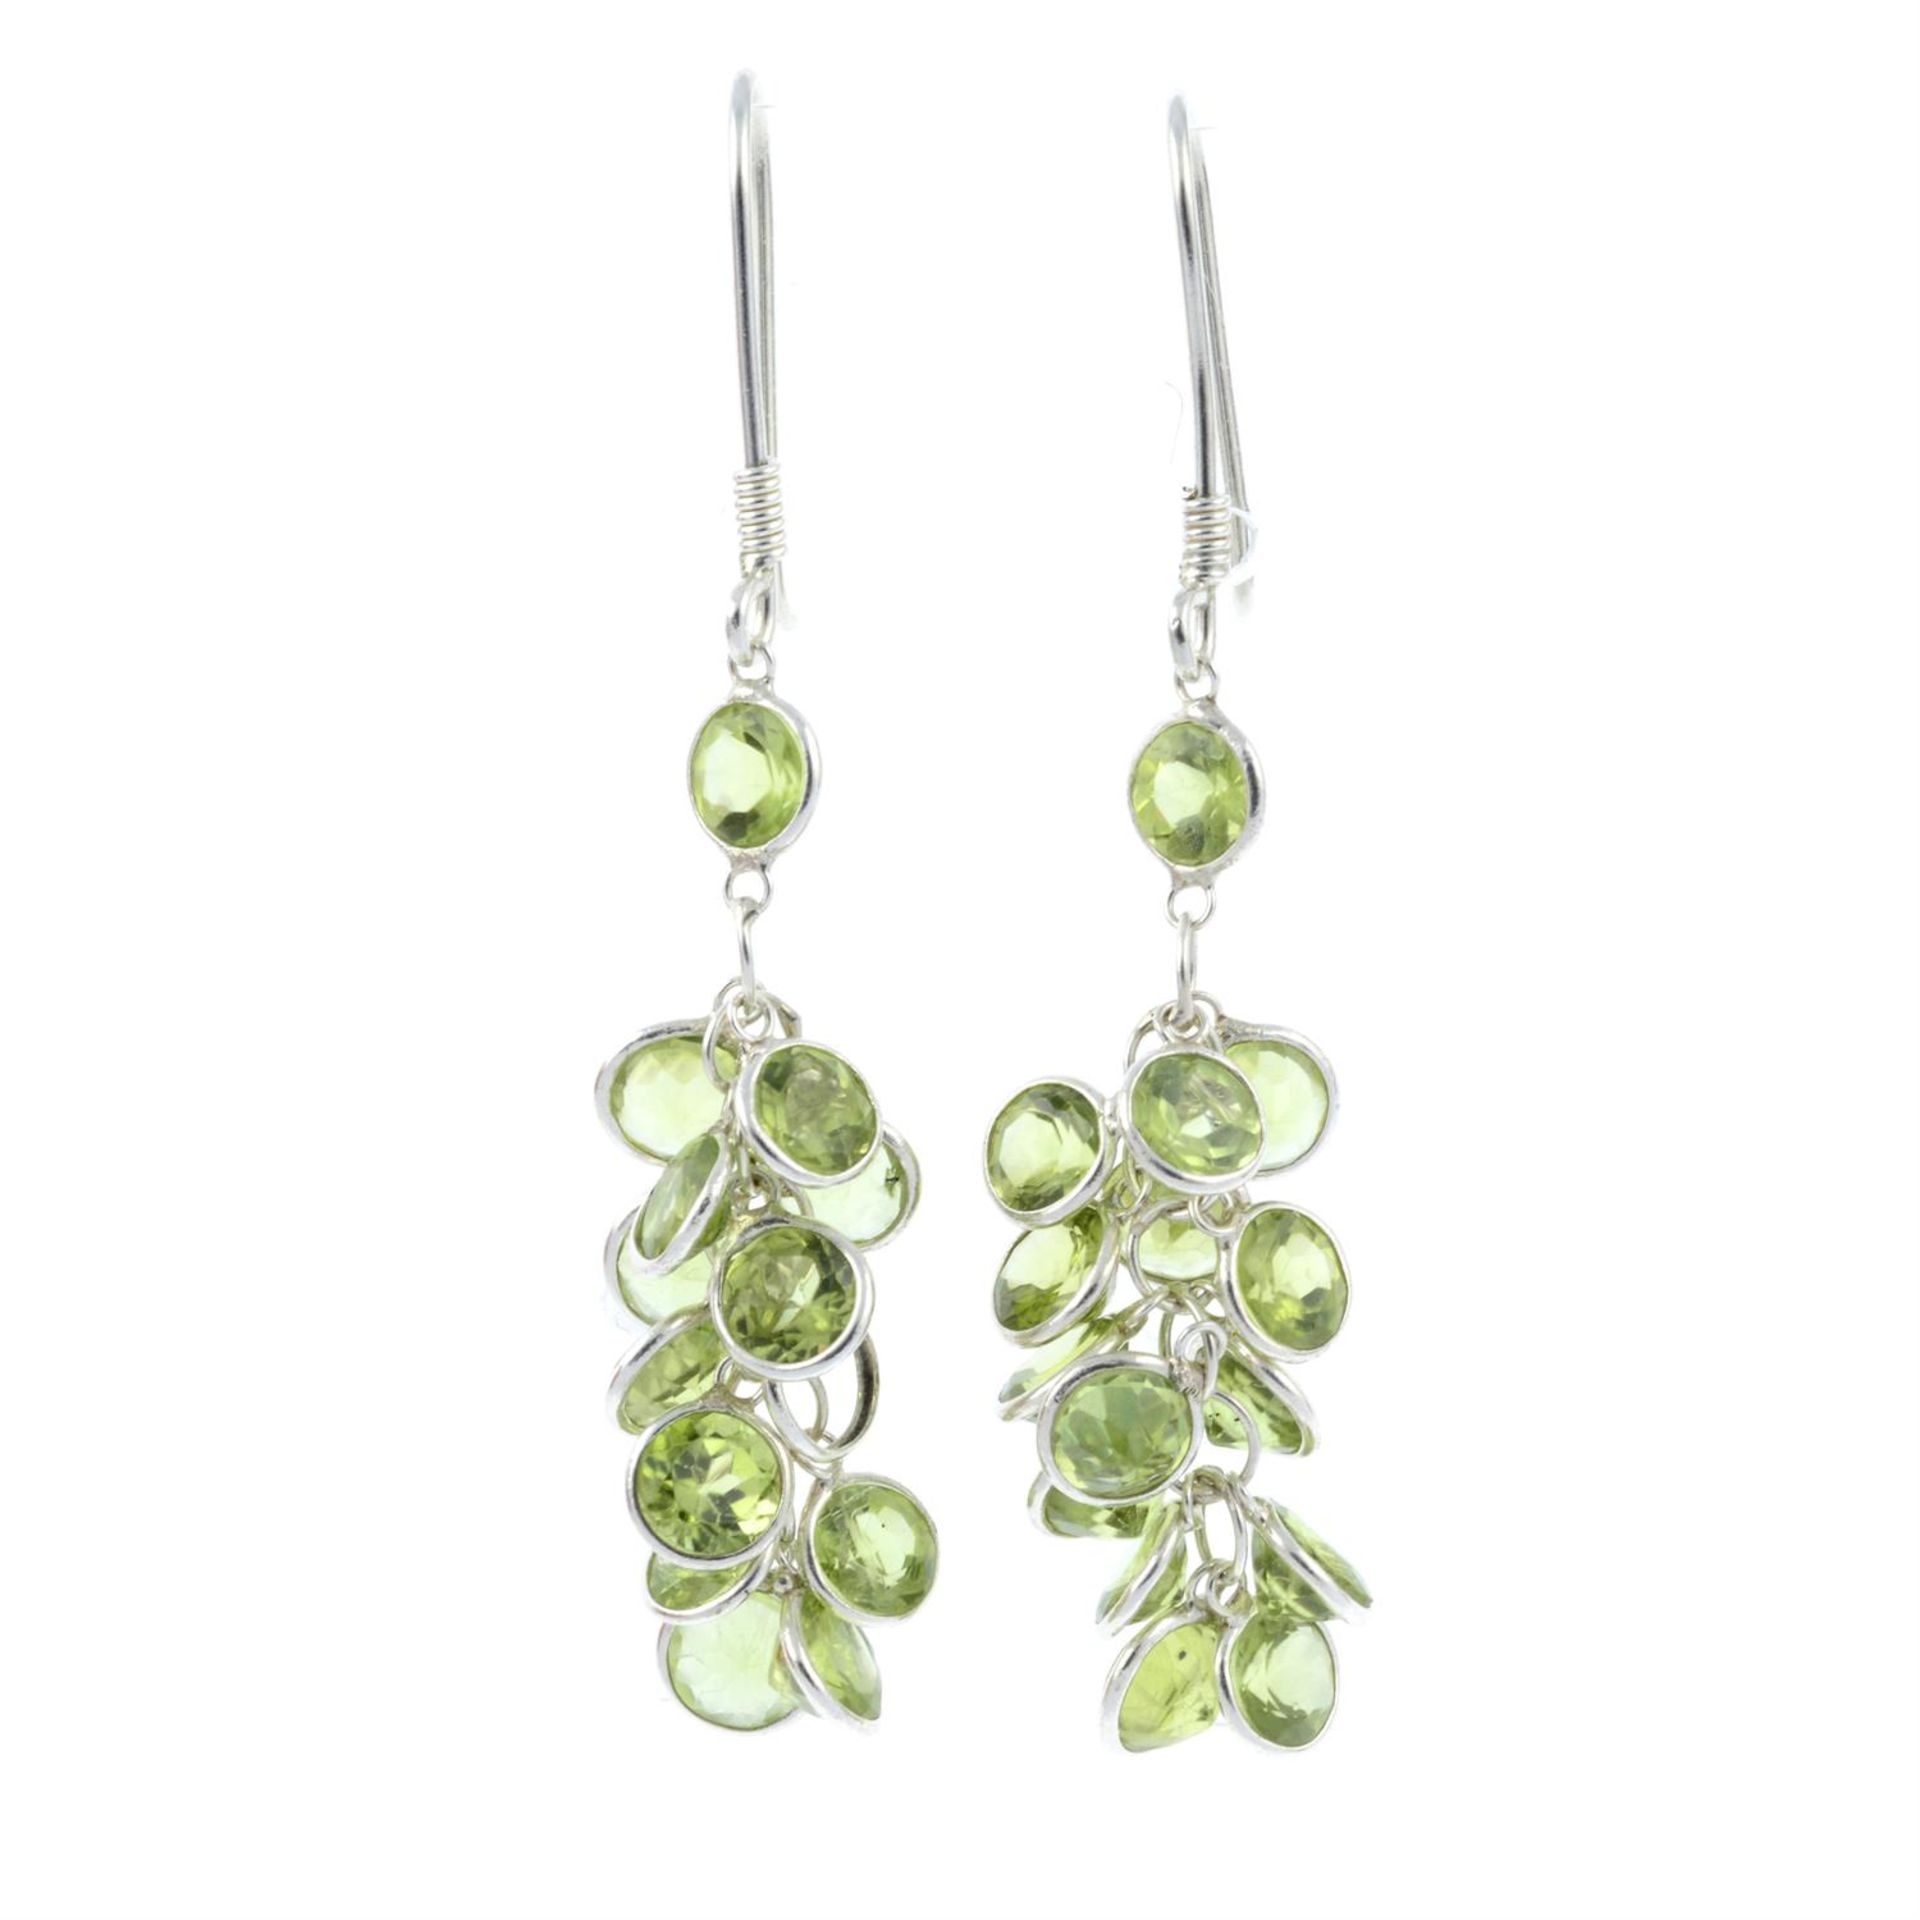 A pair of peridot drop earrings.